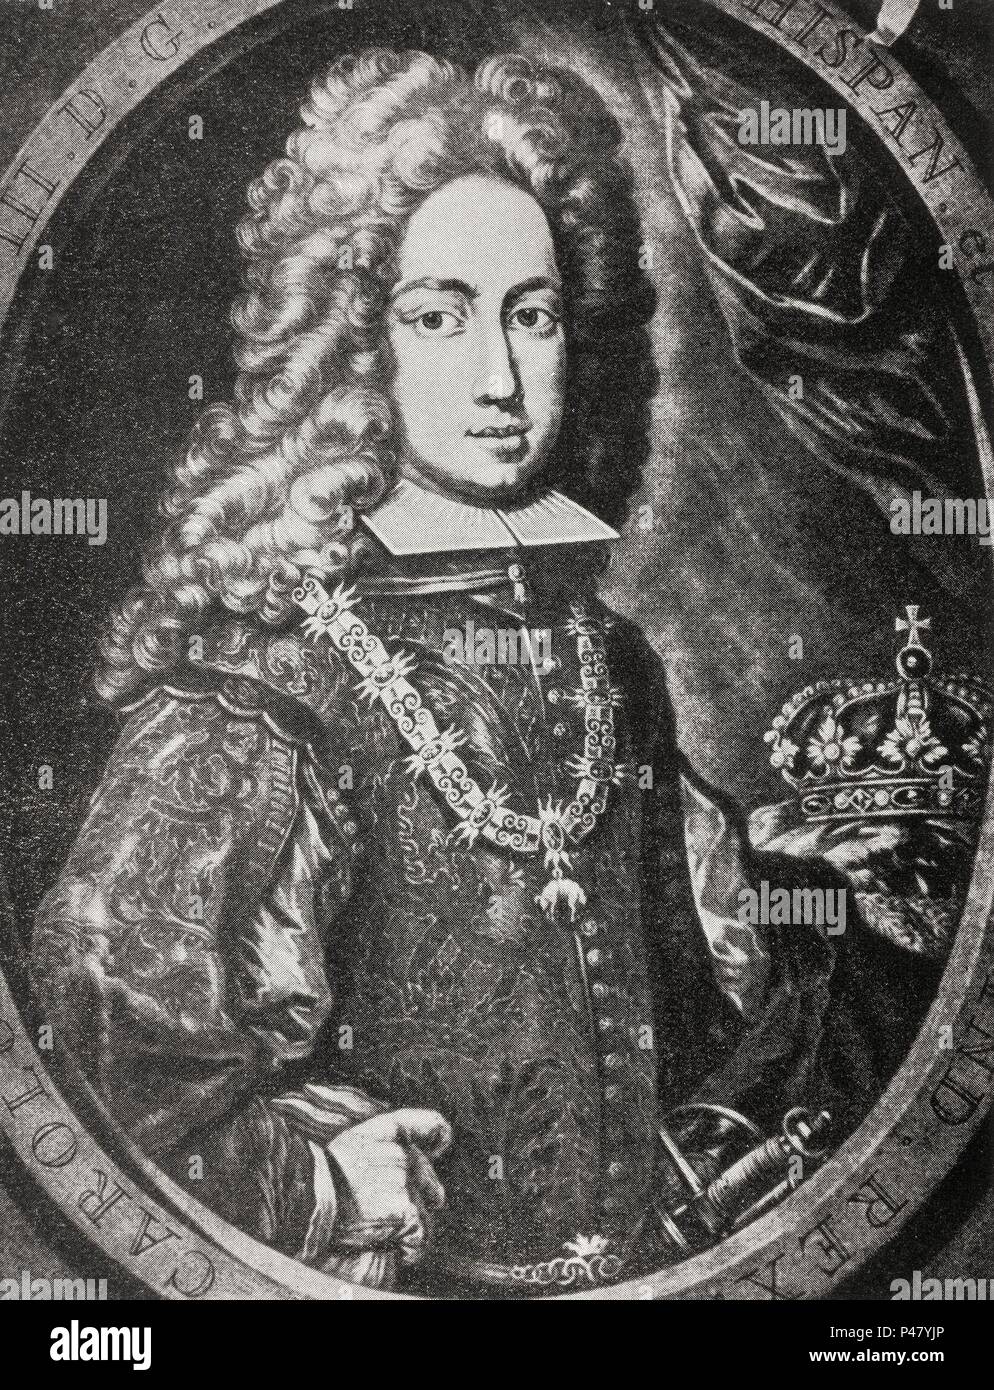 CARLOS VI DE ALEMANIA (1685-1740) EMPERADOR DESDE 1711. Location: BIBLIOTECA NACIONAL-COLECCION, MADRID, SPAIN. Stock Photo